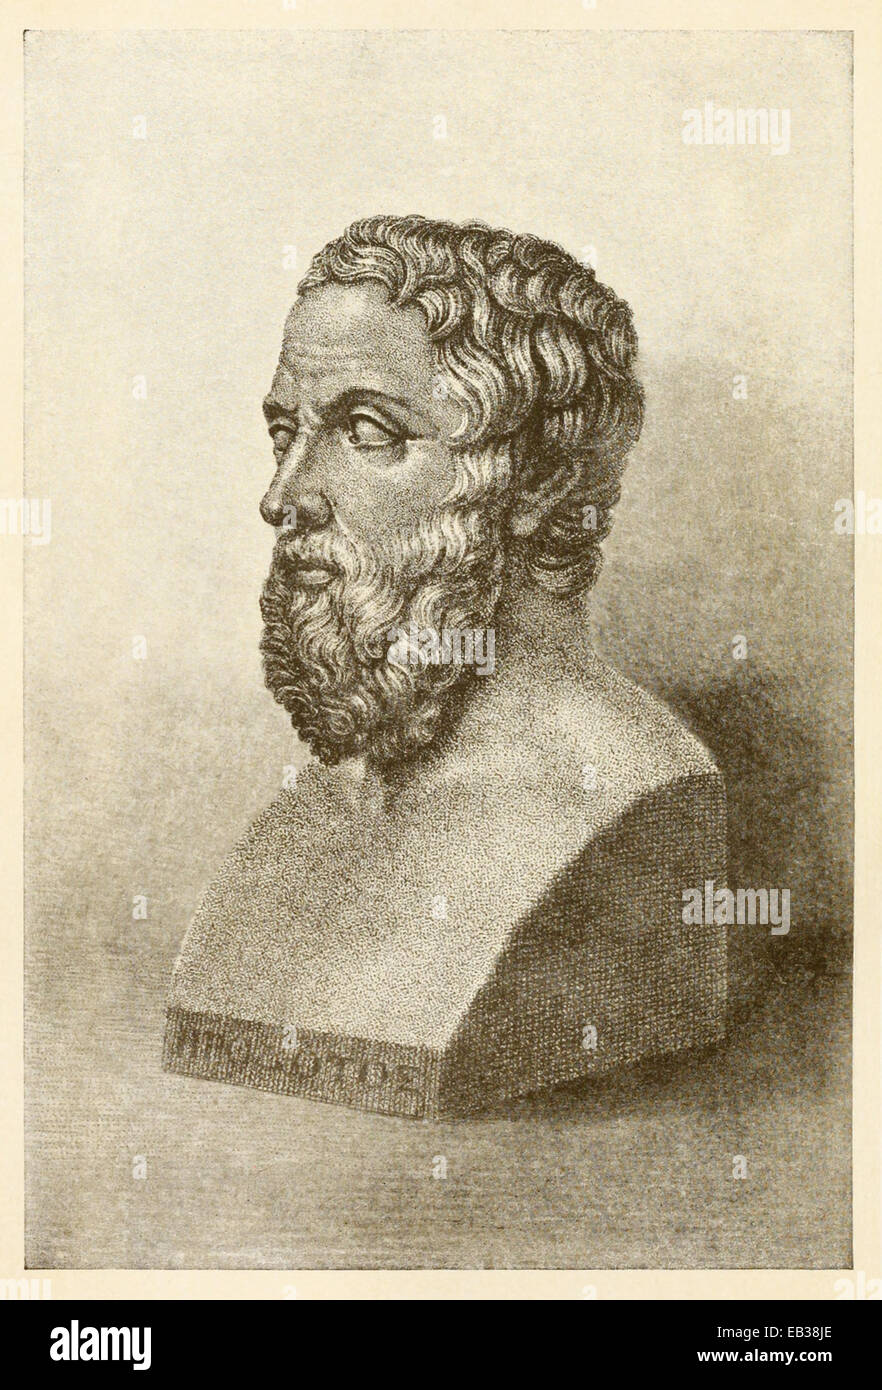 Dessin du buste d'Hérodote (484-425BC), historien grec. Voir la description pour plus d'informations. Banque D'Images